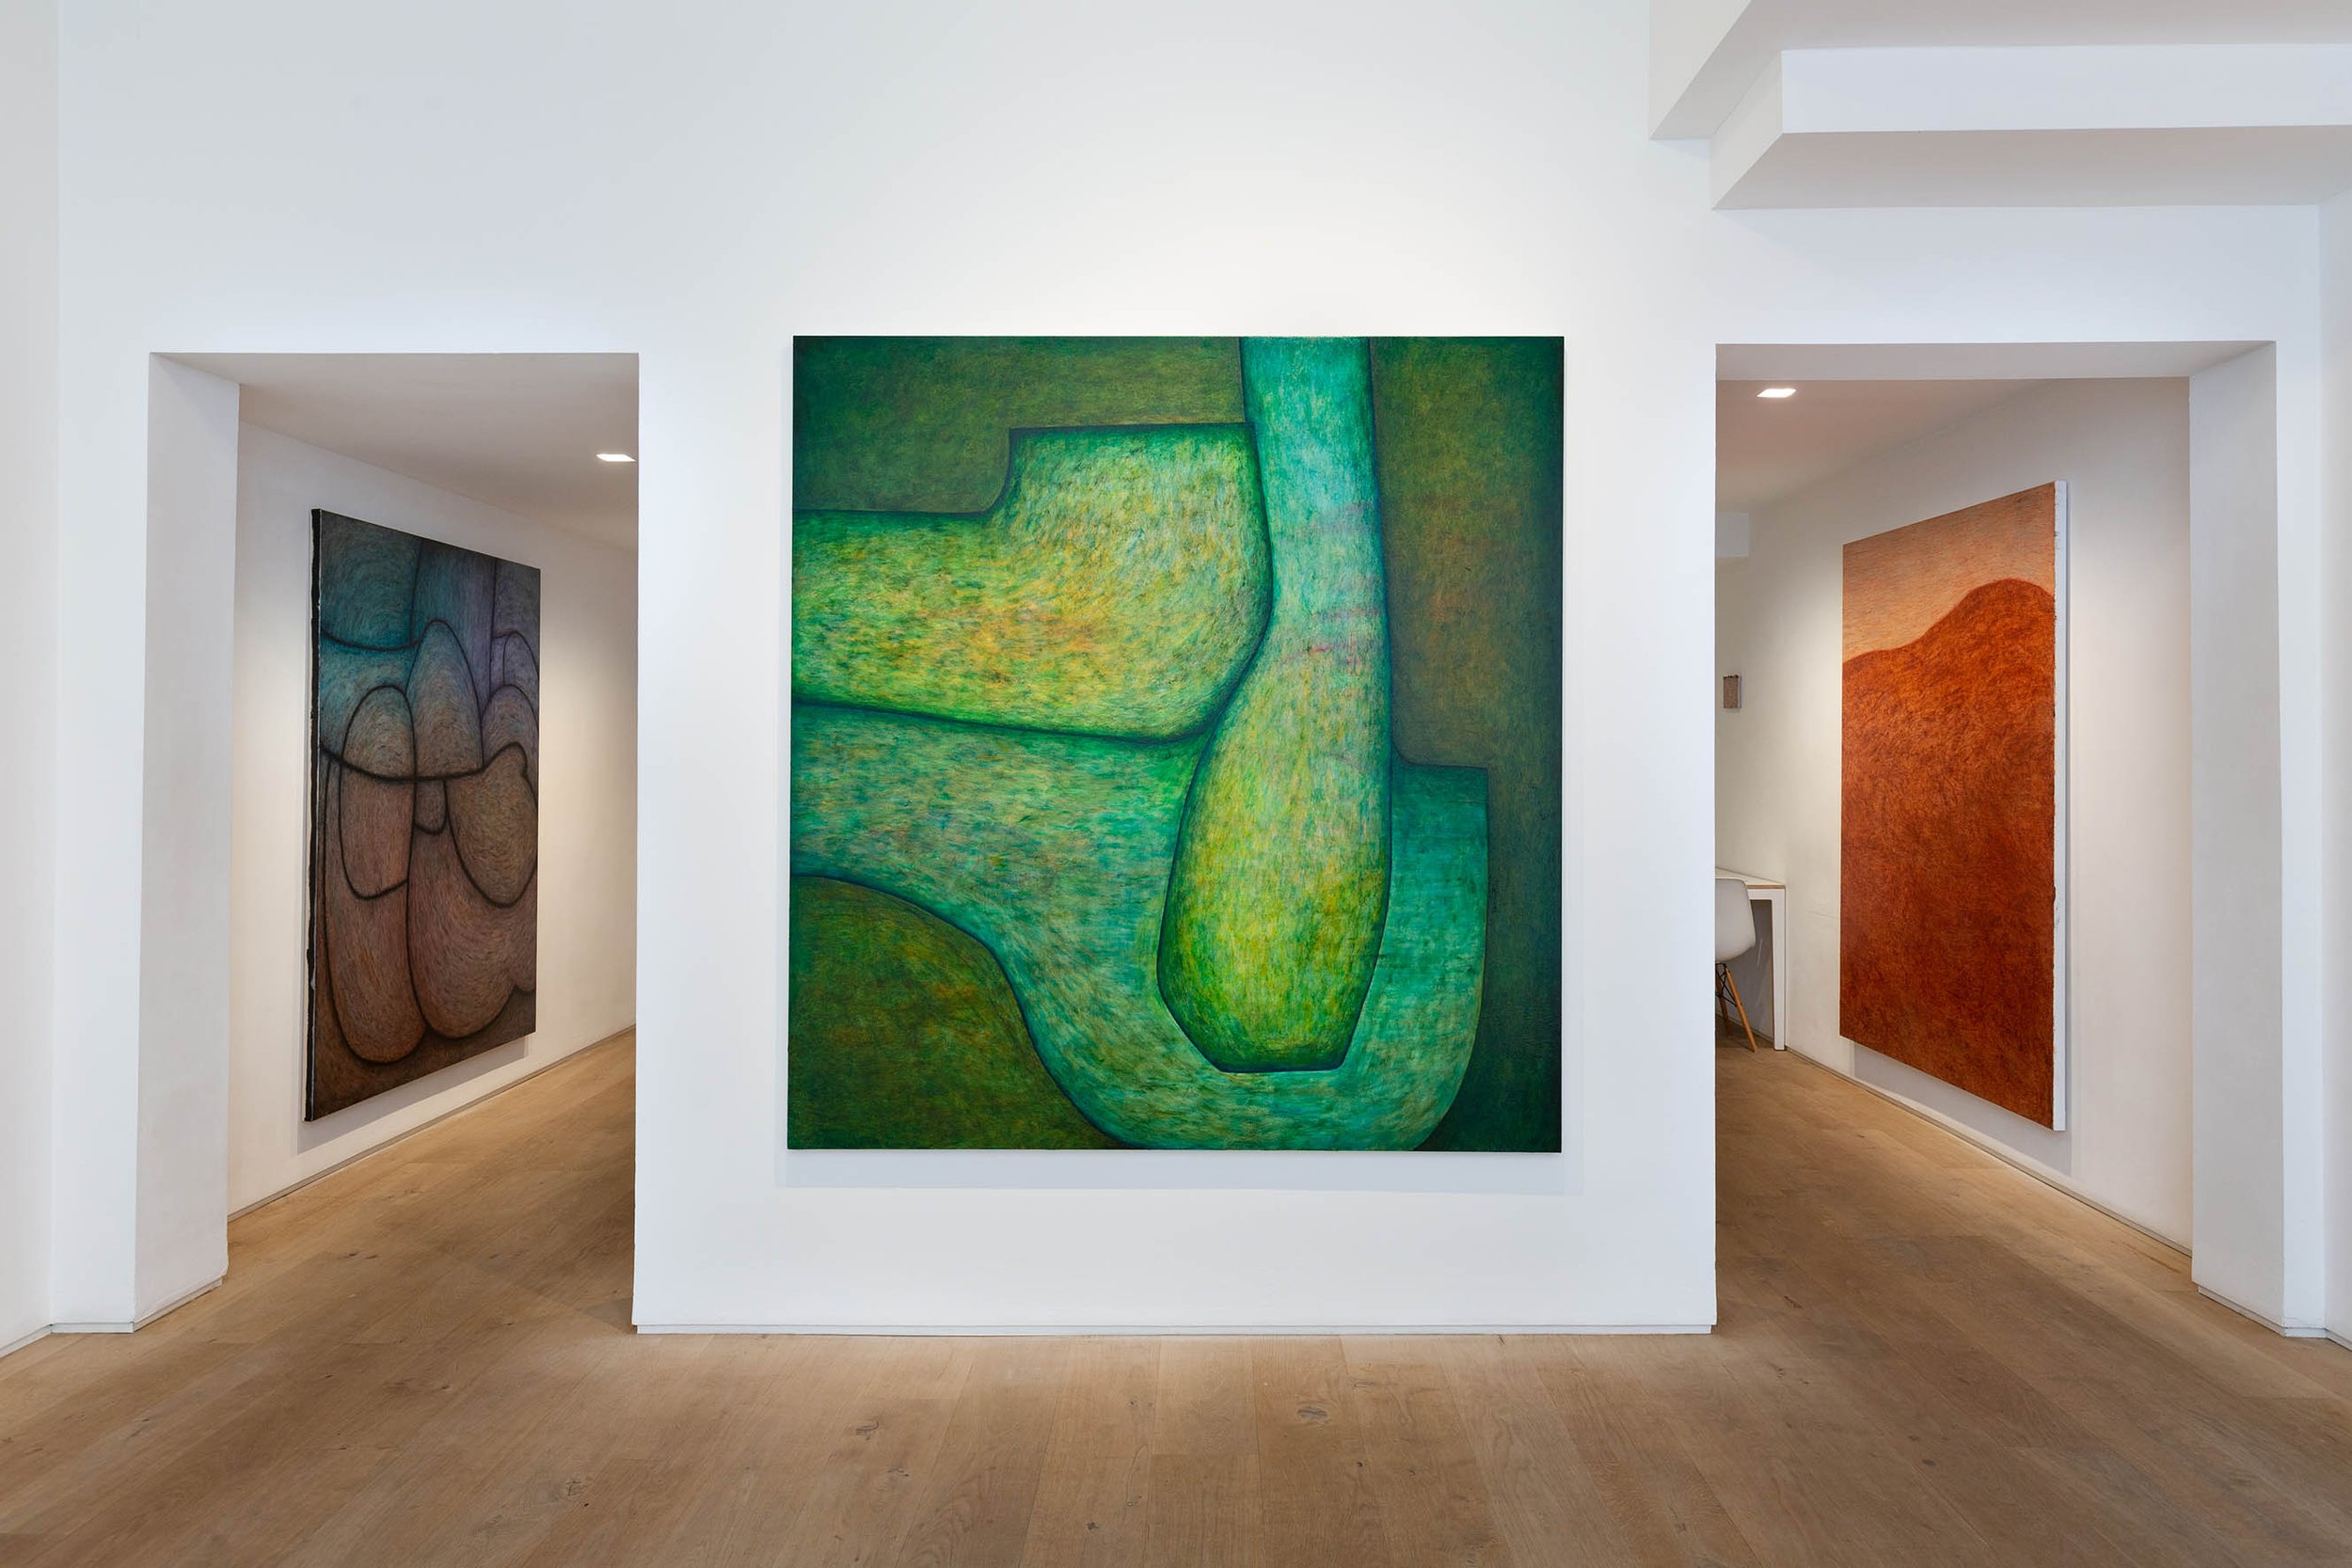 Kristin Hjellegjerde Gallery